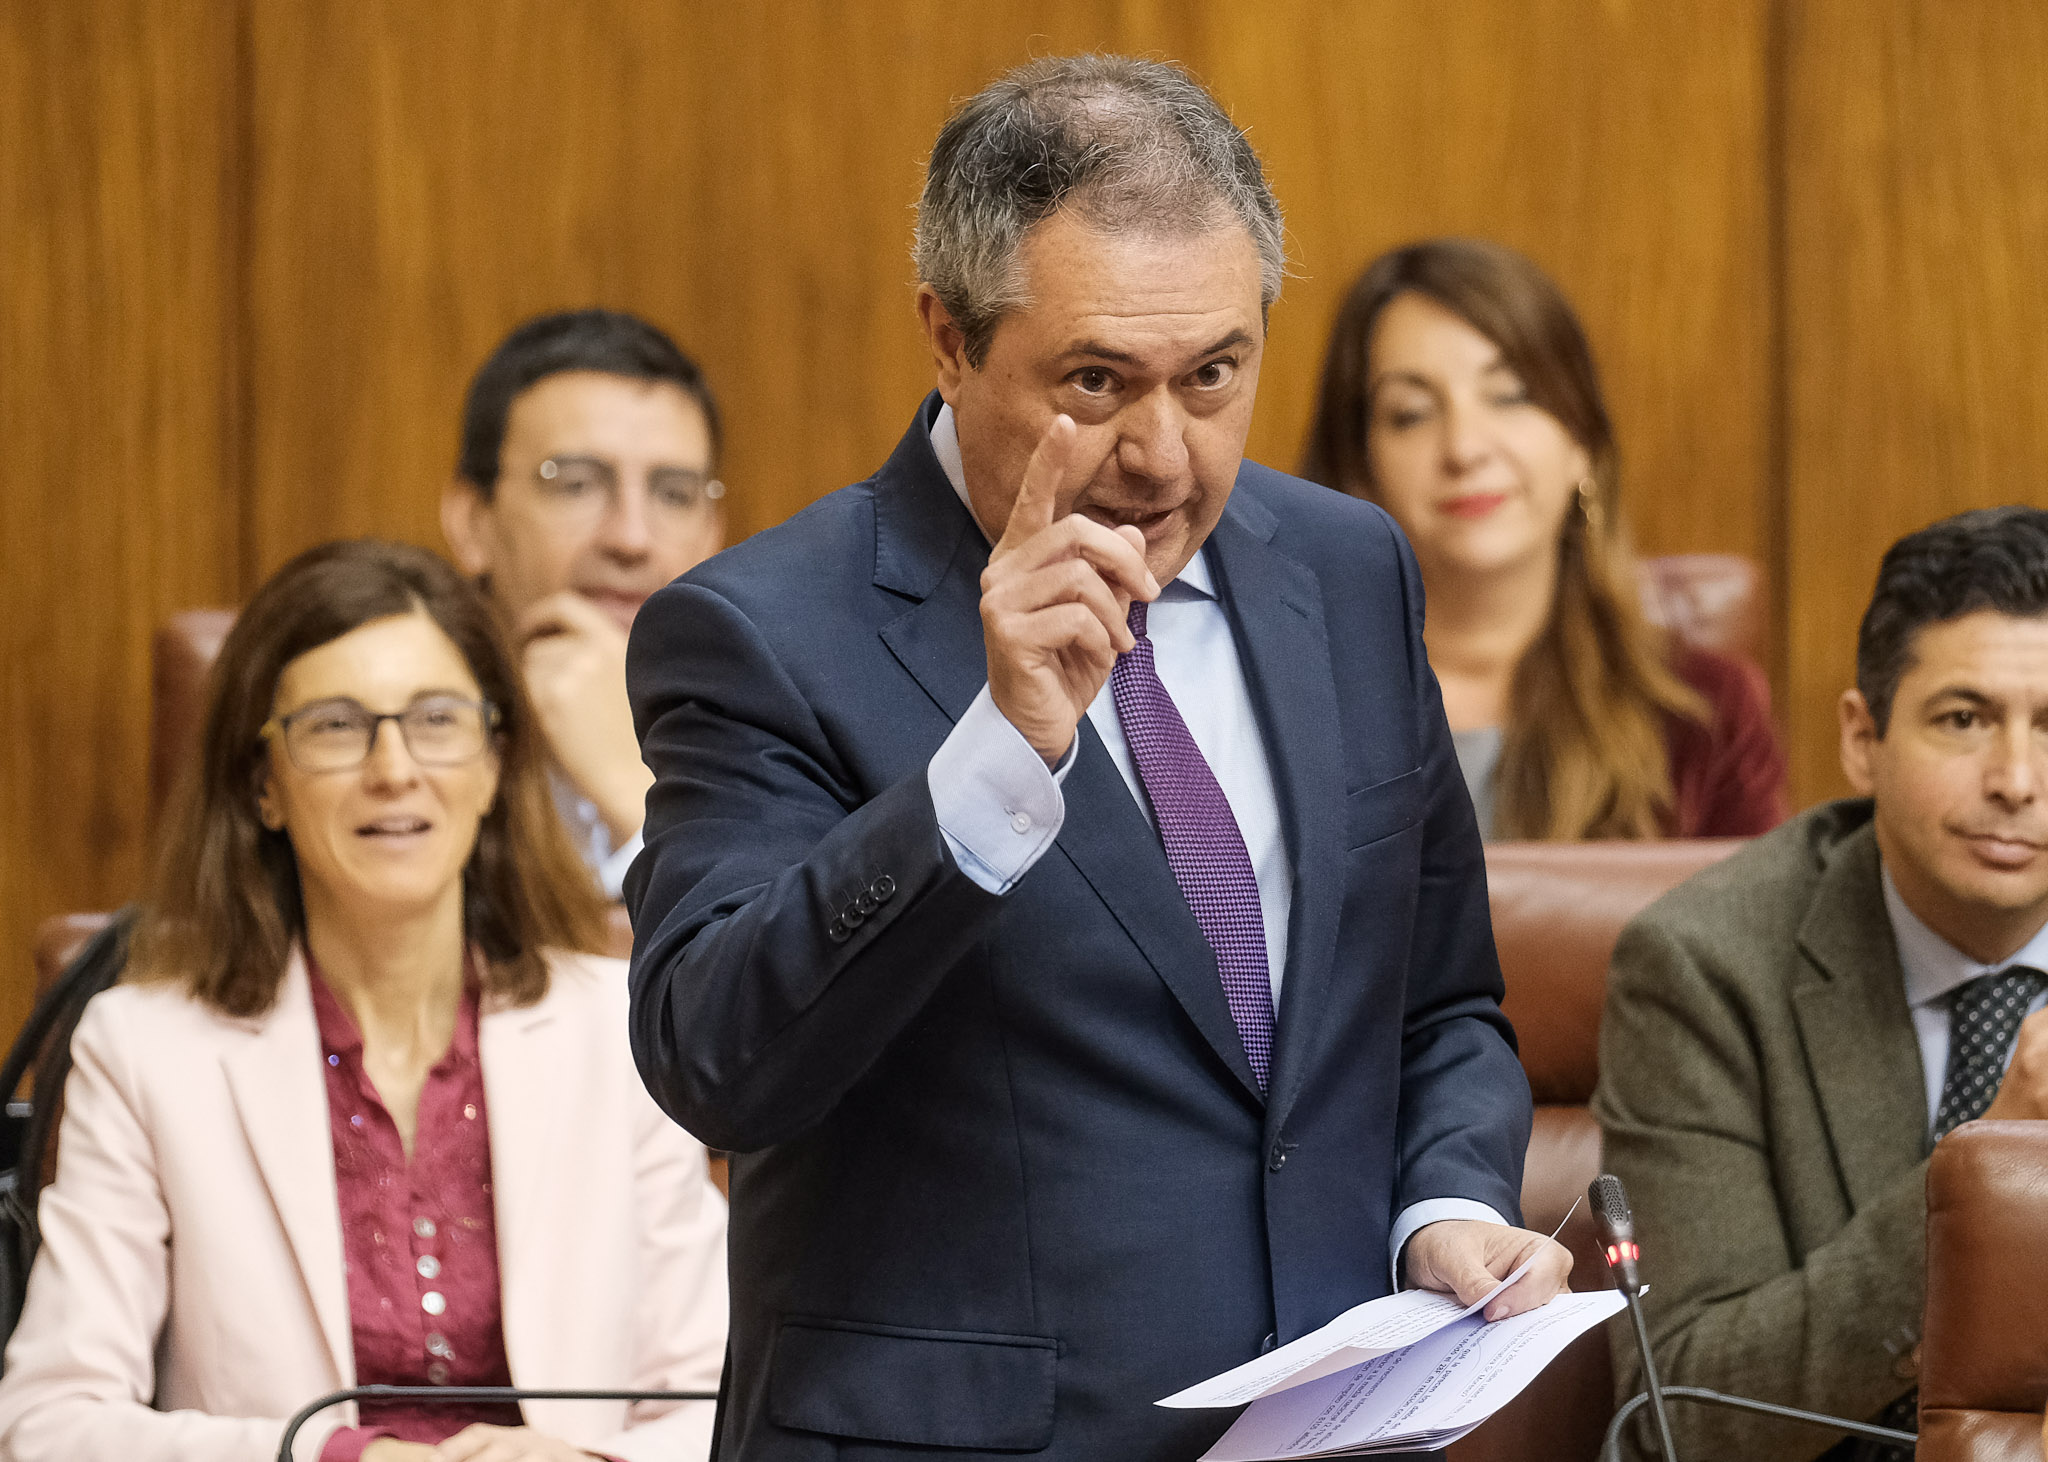  Juan Espadas, presidente del G.P. Socialista, formula una pregunta relativa al mercado laboral dirigida al presidente de la Junta de Andaluca  